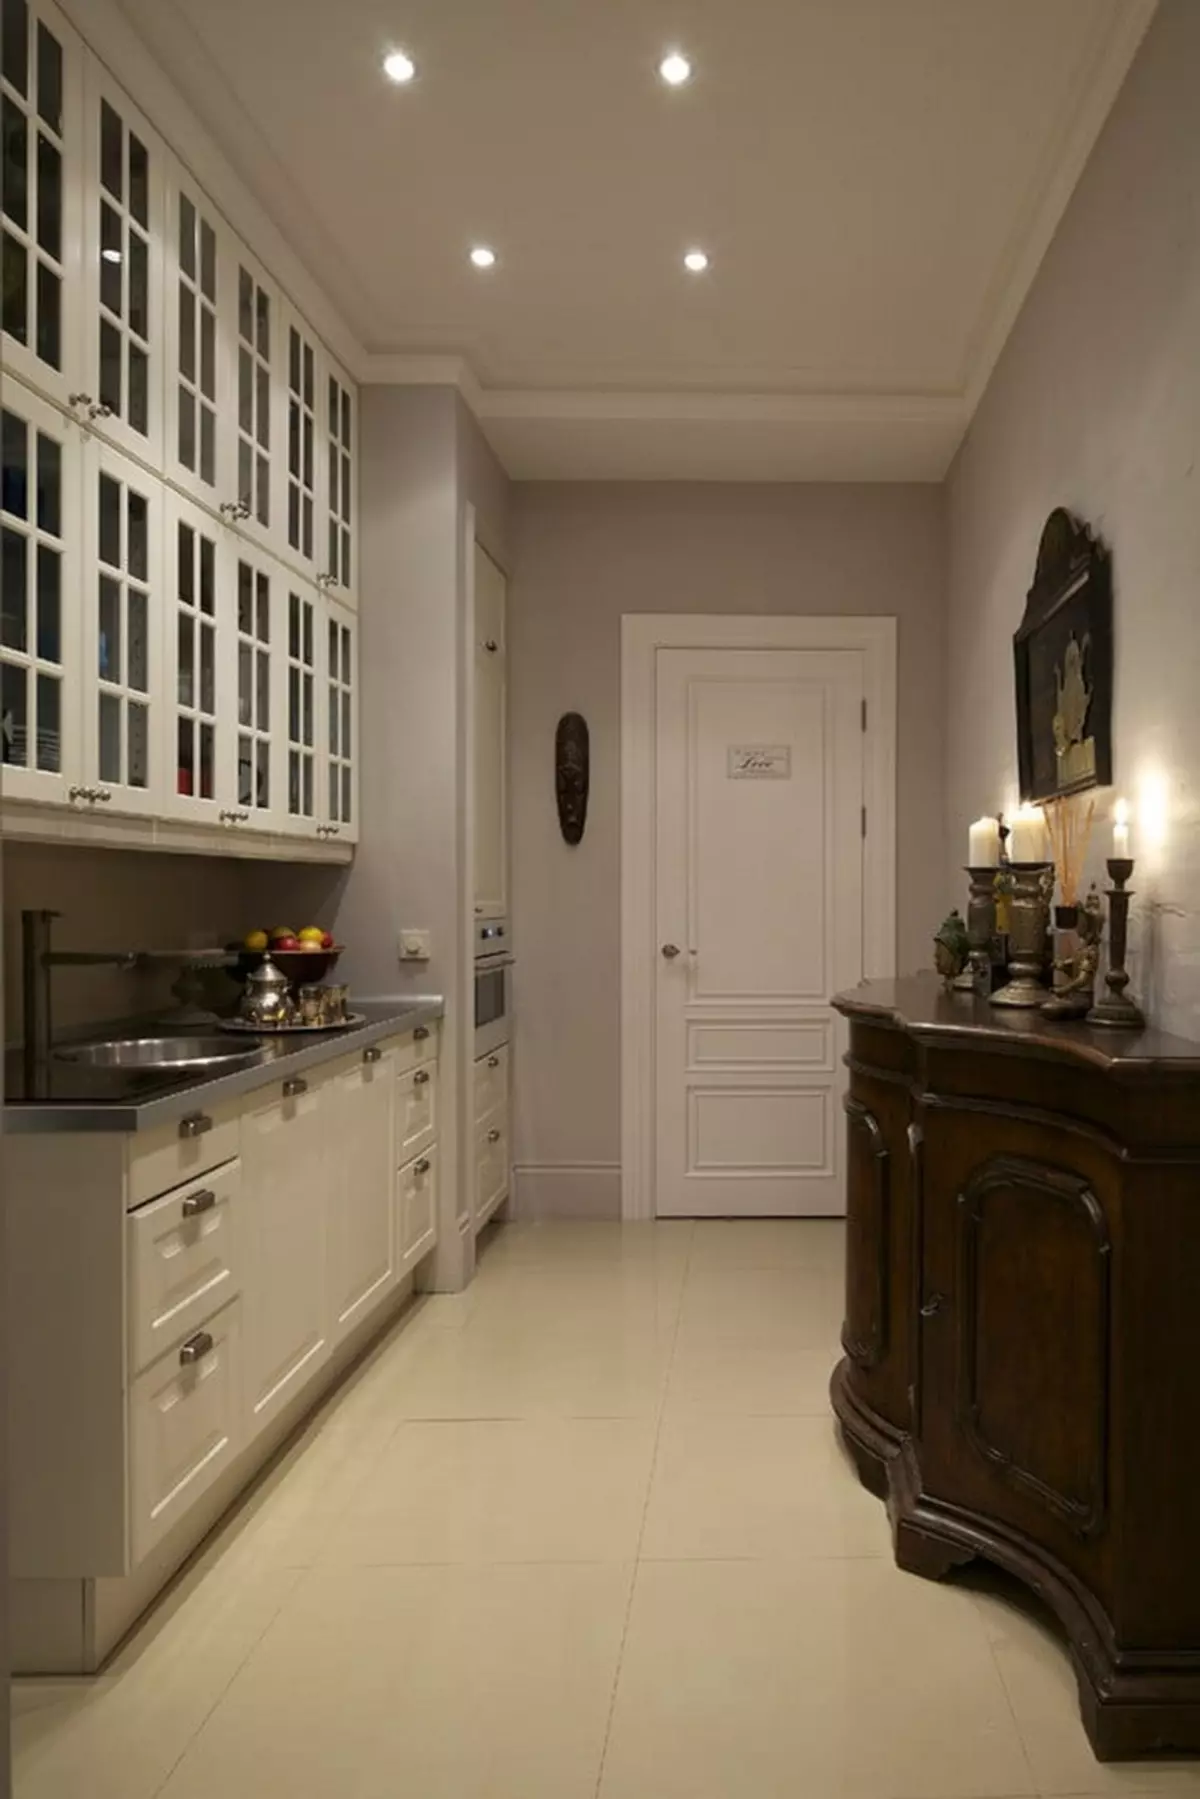 Hall de entrada de cociña (62 fotos): un deseño de cociña combinado cun corredor nunha casa privada e no apartamento. Deseño de cociña de interiores nun estilo 9487_48